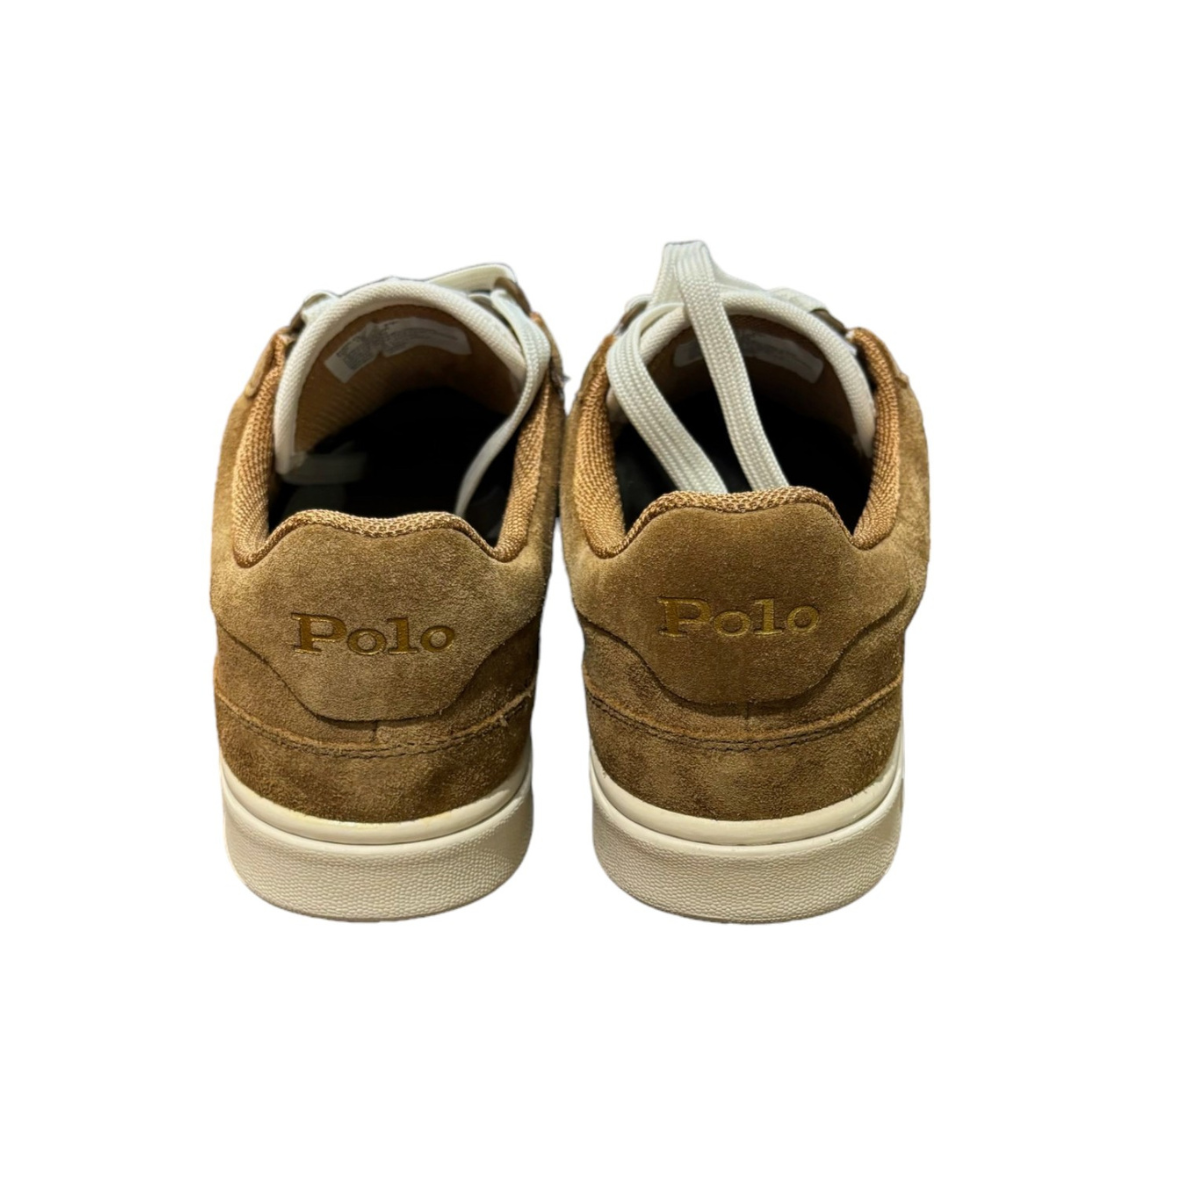 Polo Ralph Lauren Sneakers in Pelle Scamosciata Uomo Beige